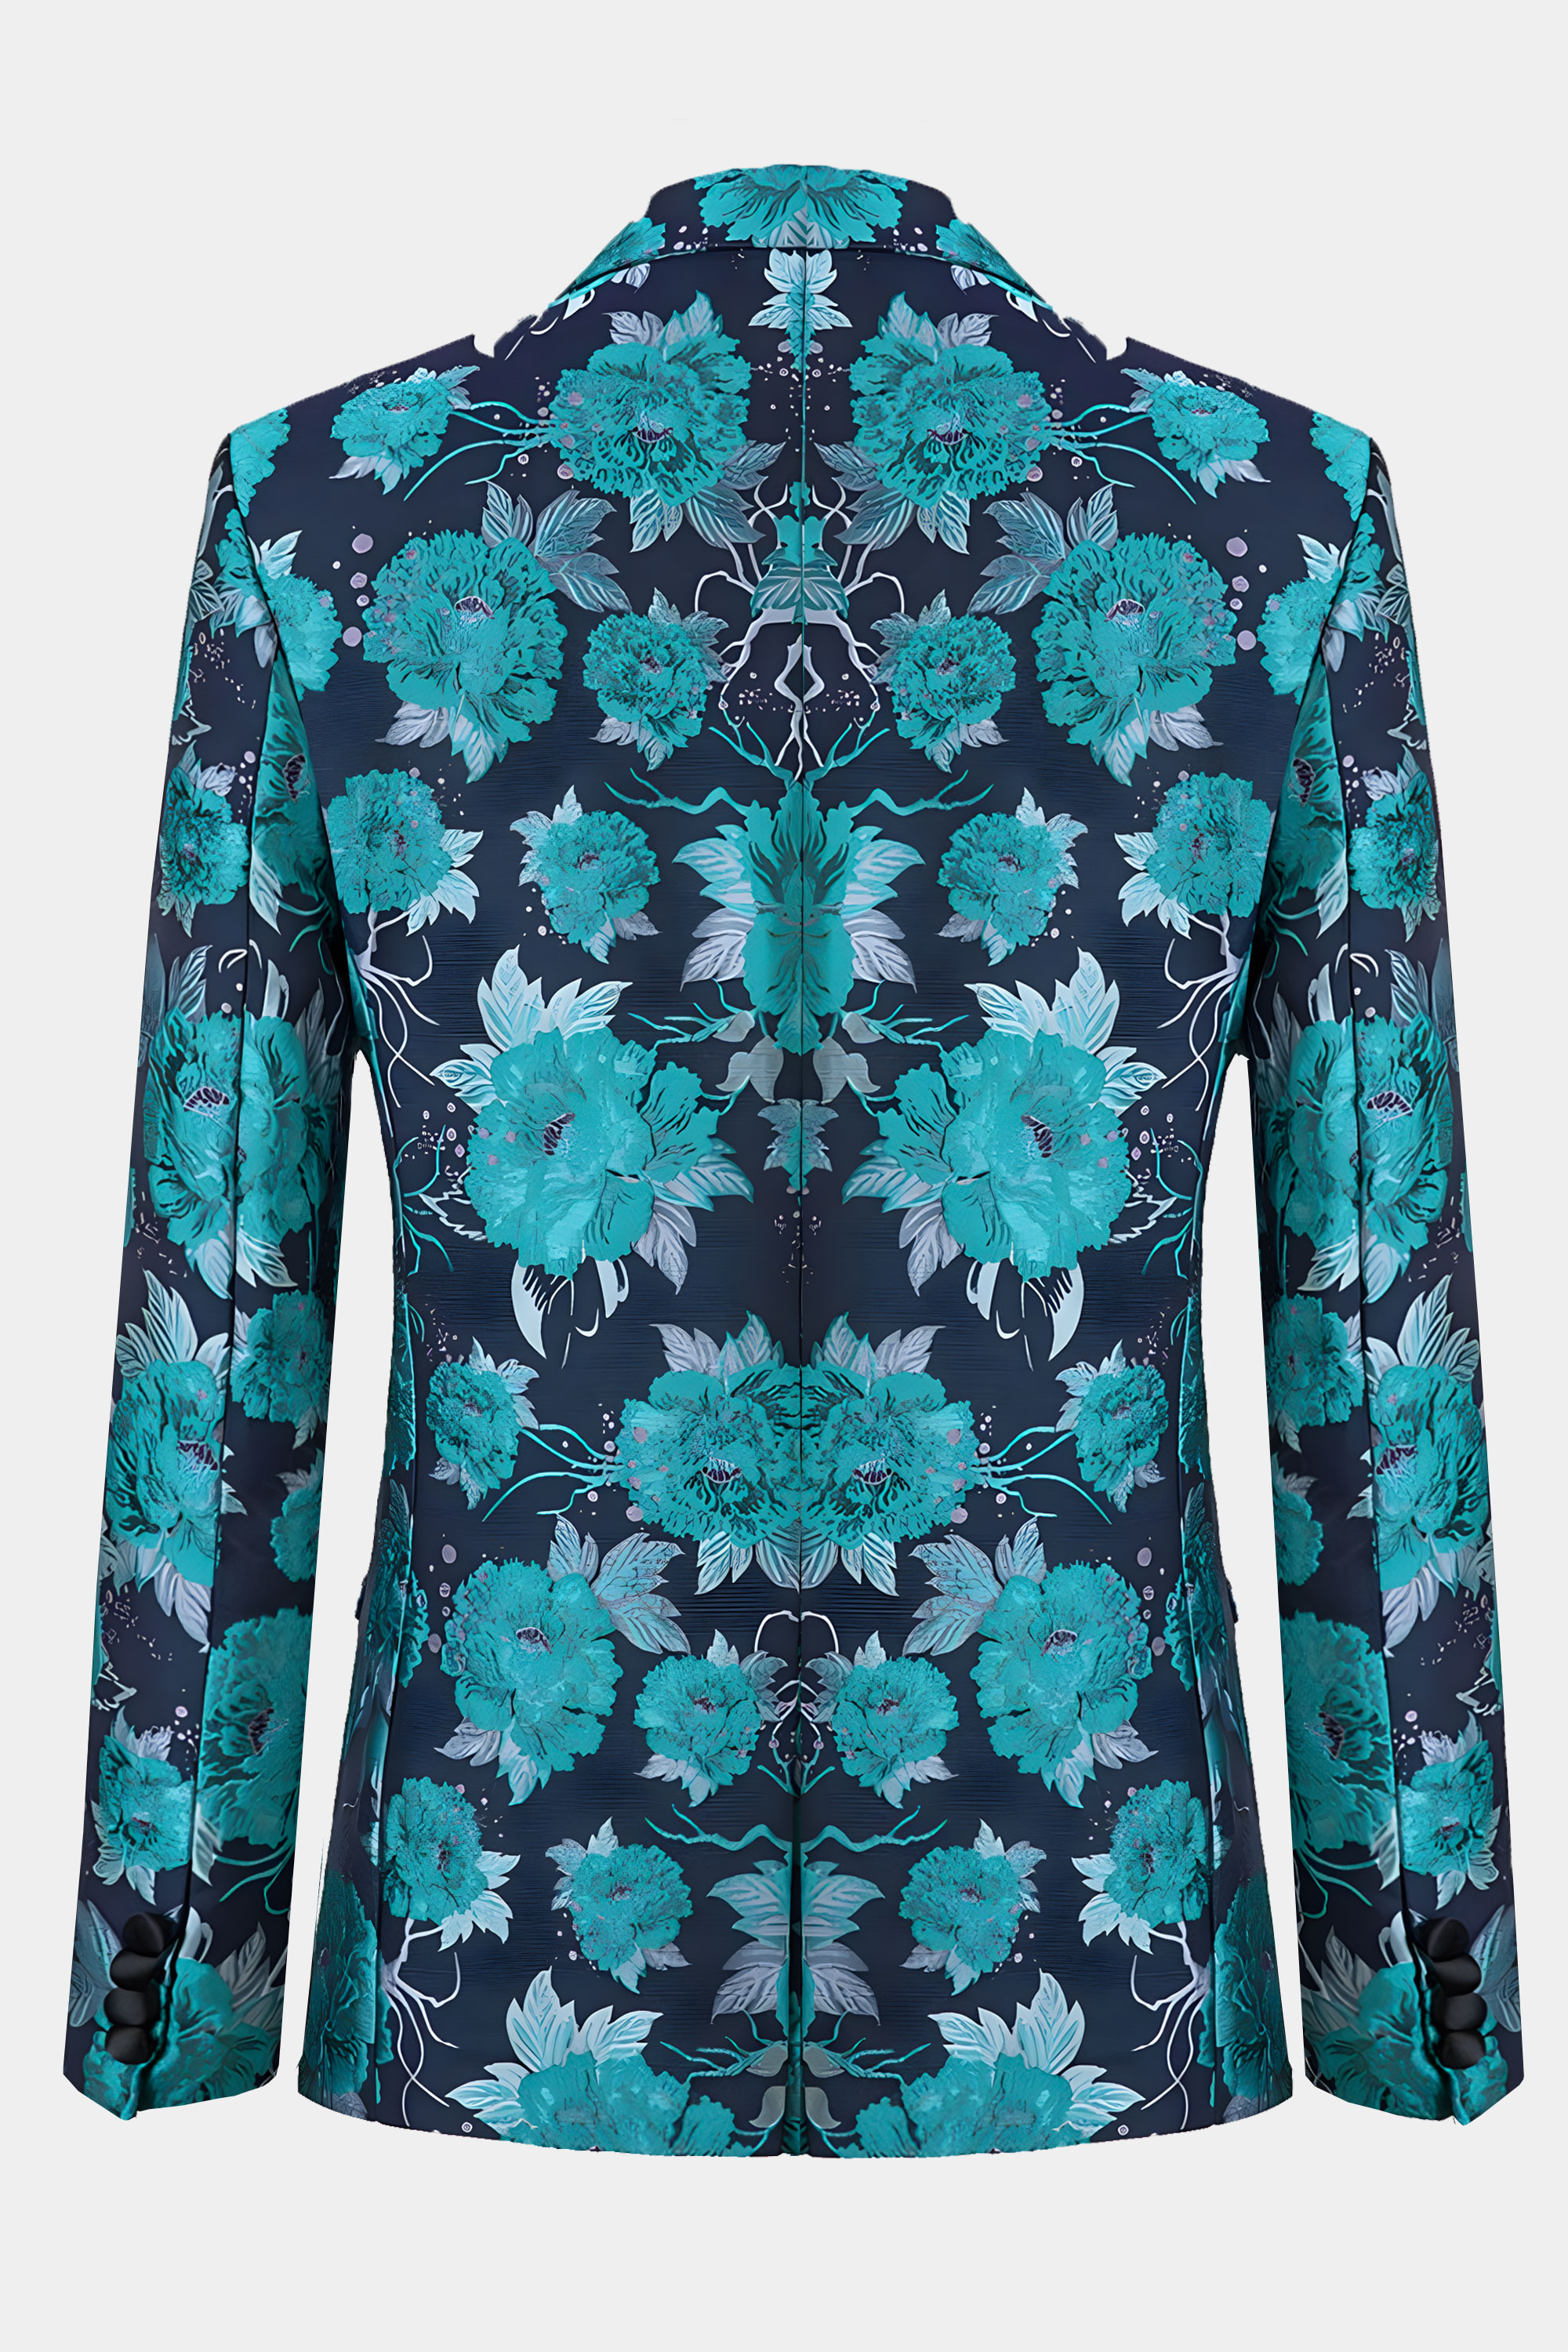 Turquoise-Floral-Suit-Tuxedo-Jacket-from-Gentlemansguru.com